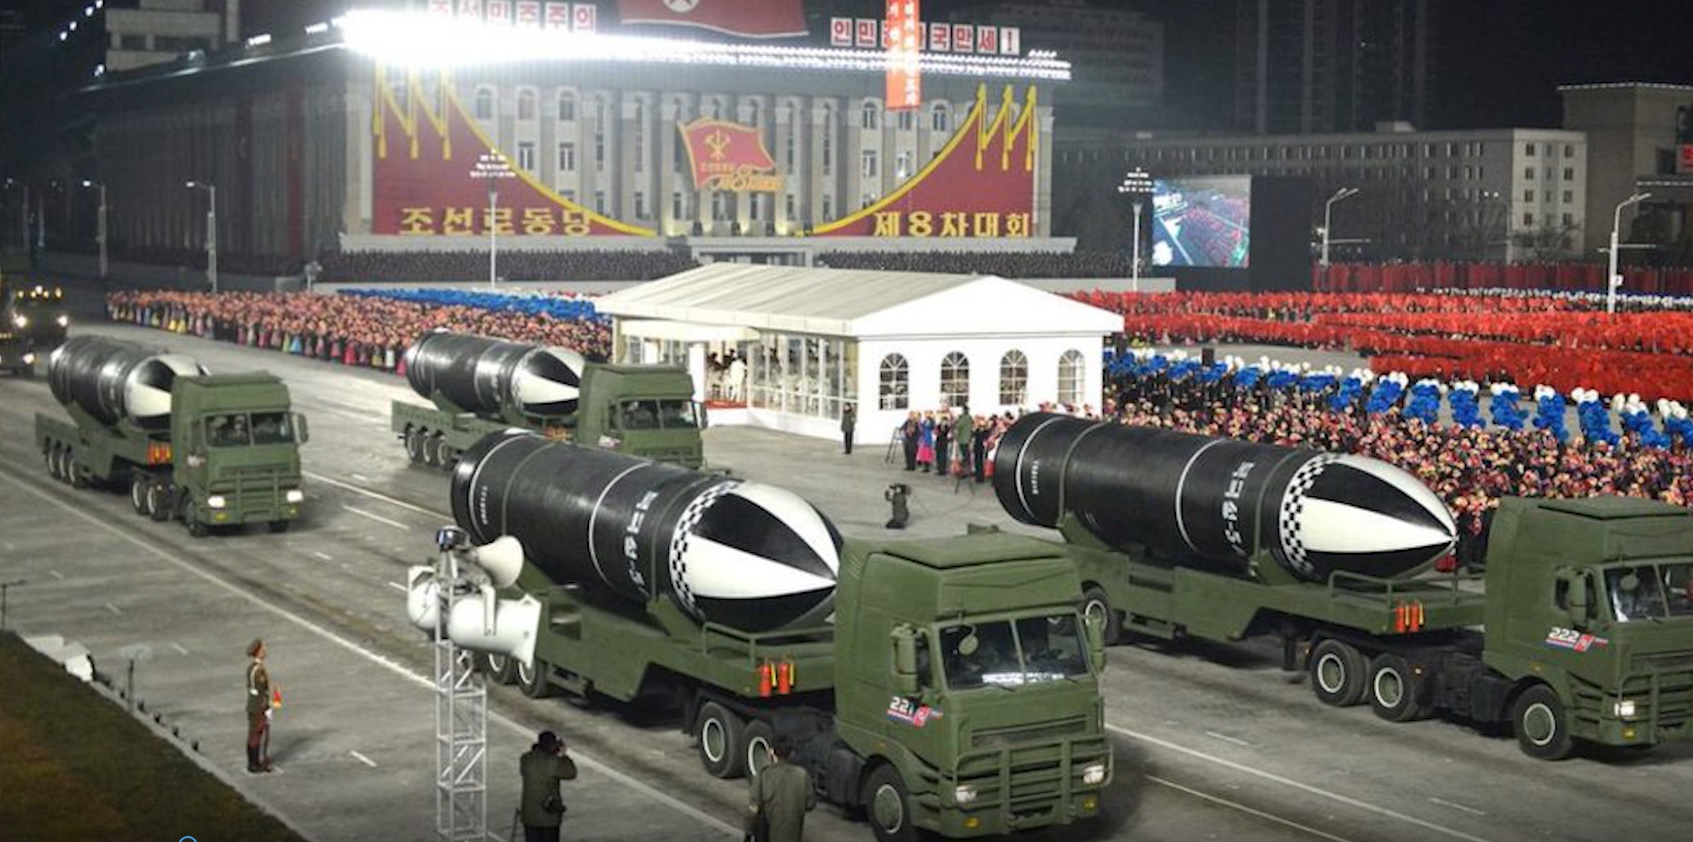 उत्तर कोरियाद्वारा पन्डुबीबाट प्रहार गर्न सकिने ब्यालेस्टिक मिसाइल सार्वजनिक